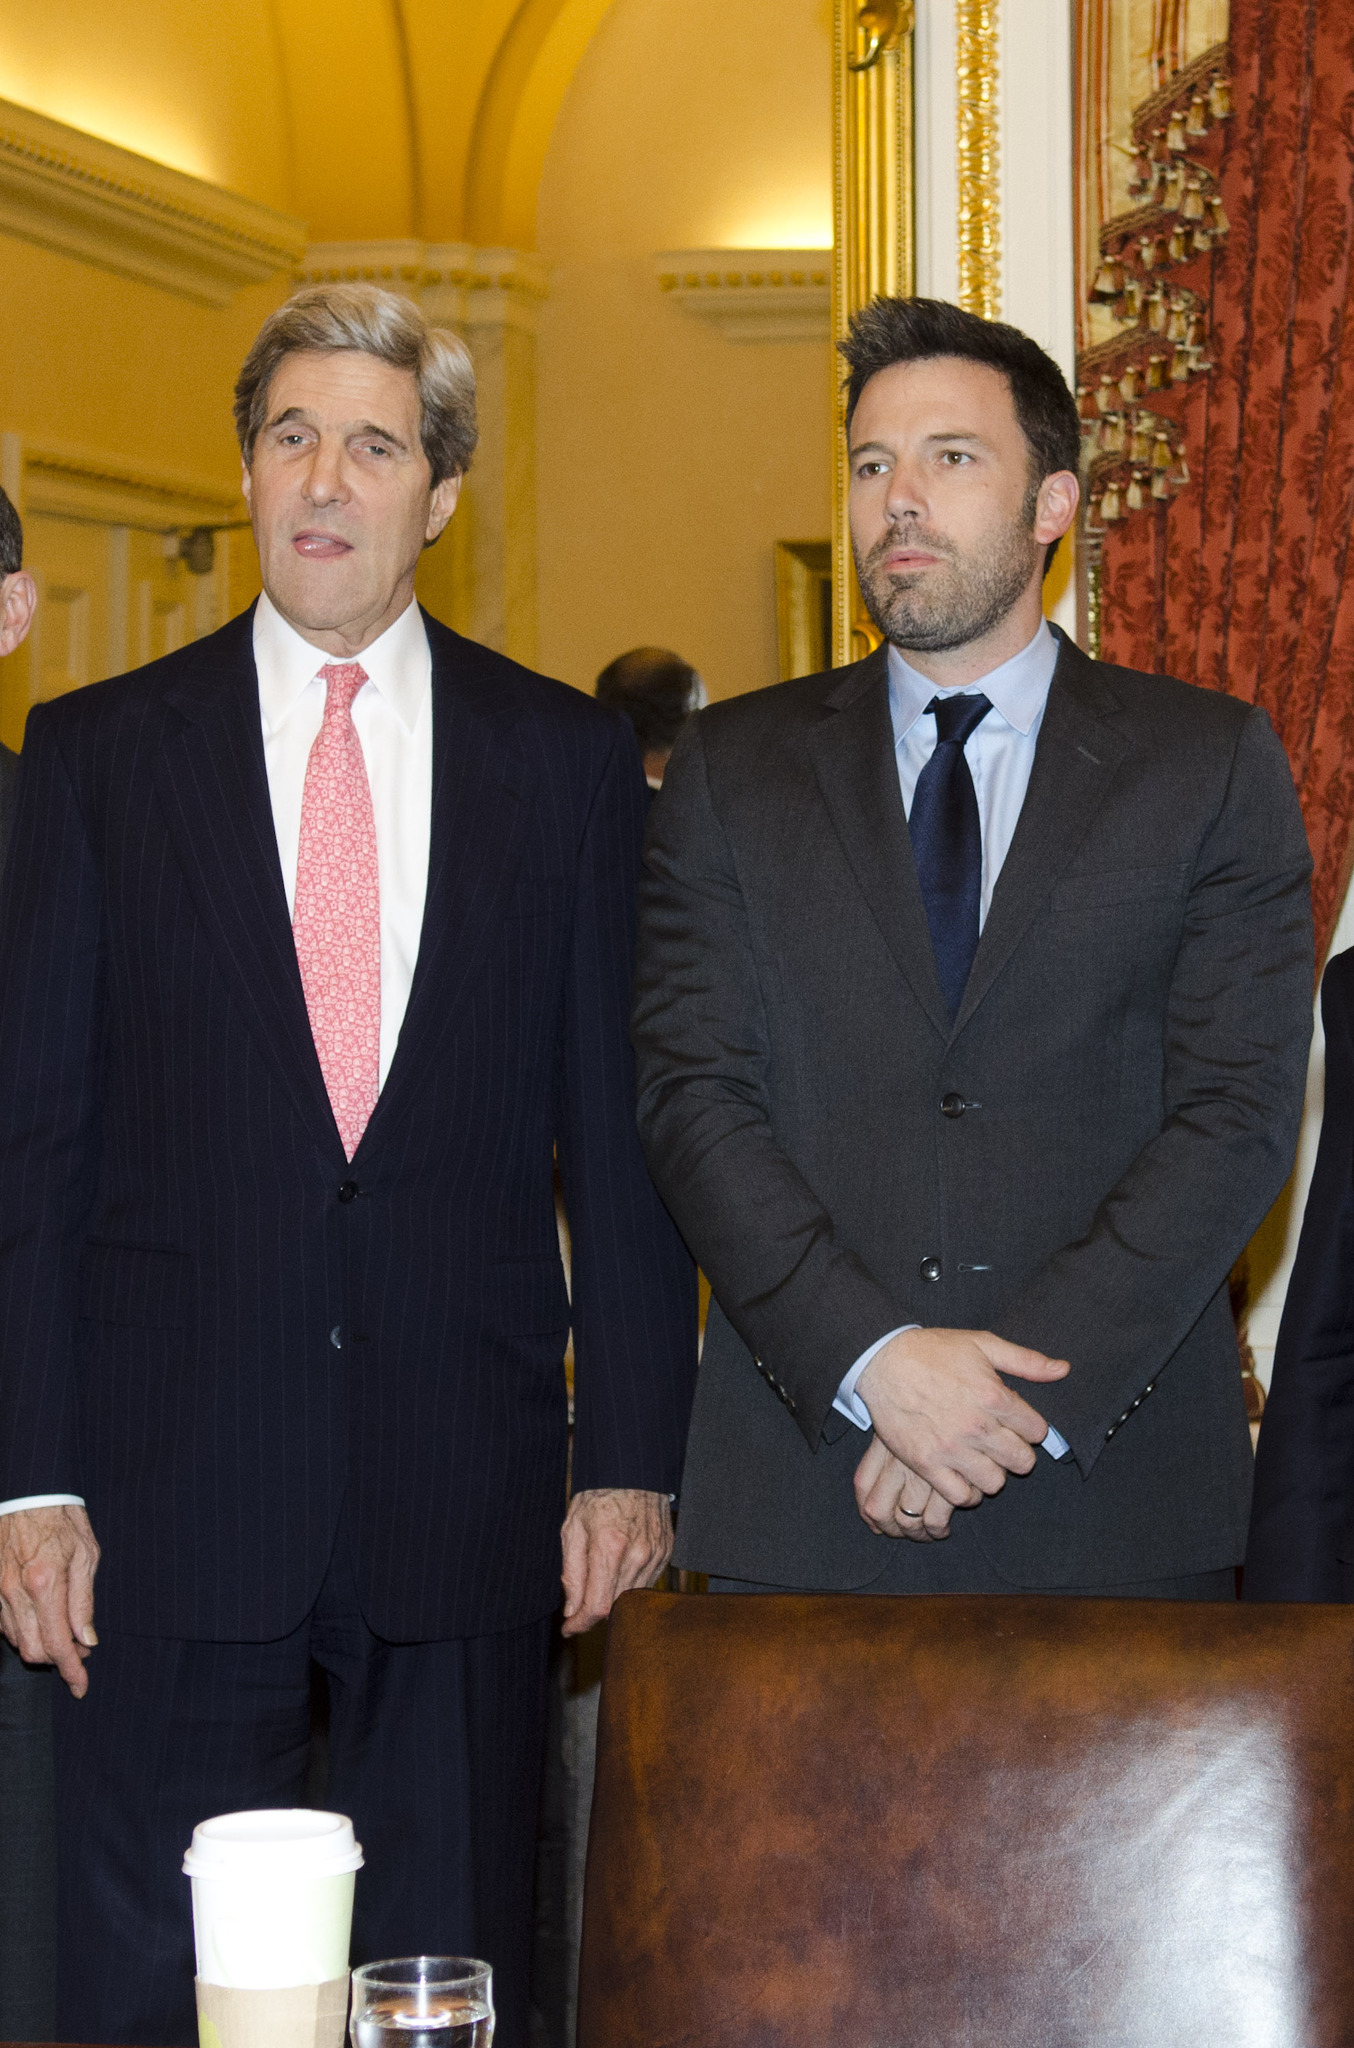 Ben Affleck and John Kerry